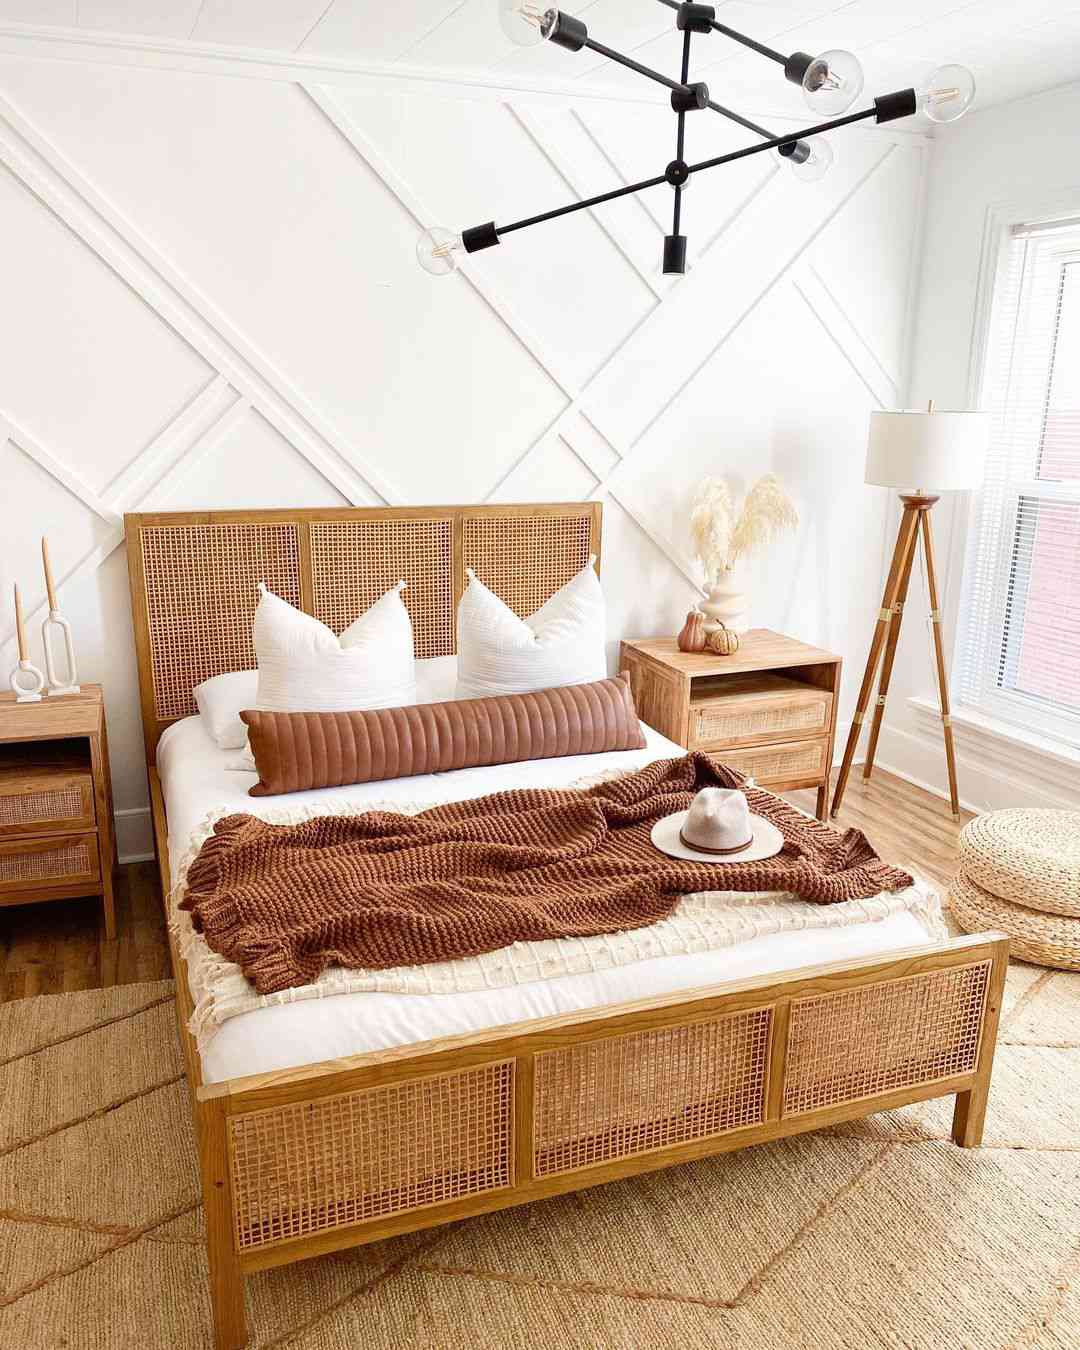 Thu đã sang và đây là những ý tưởng trang trí để bạn làm ấm không gian phòng ngủ - Ảnh 8.